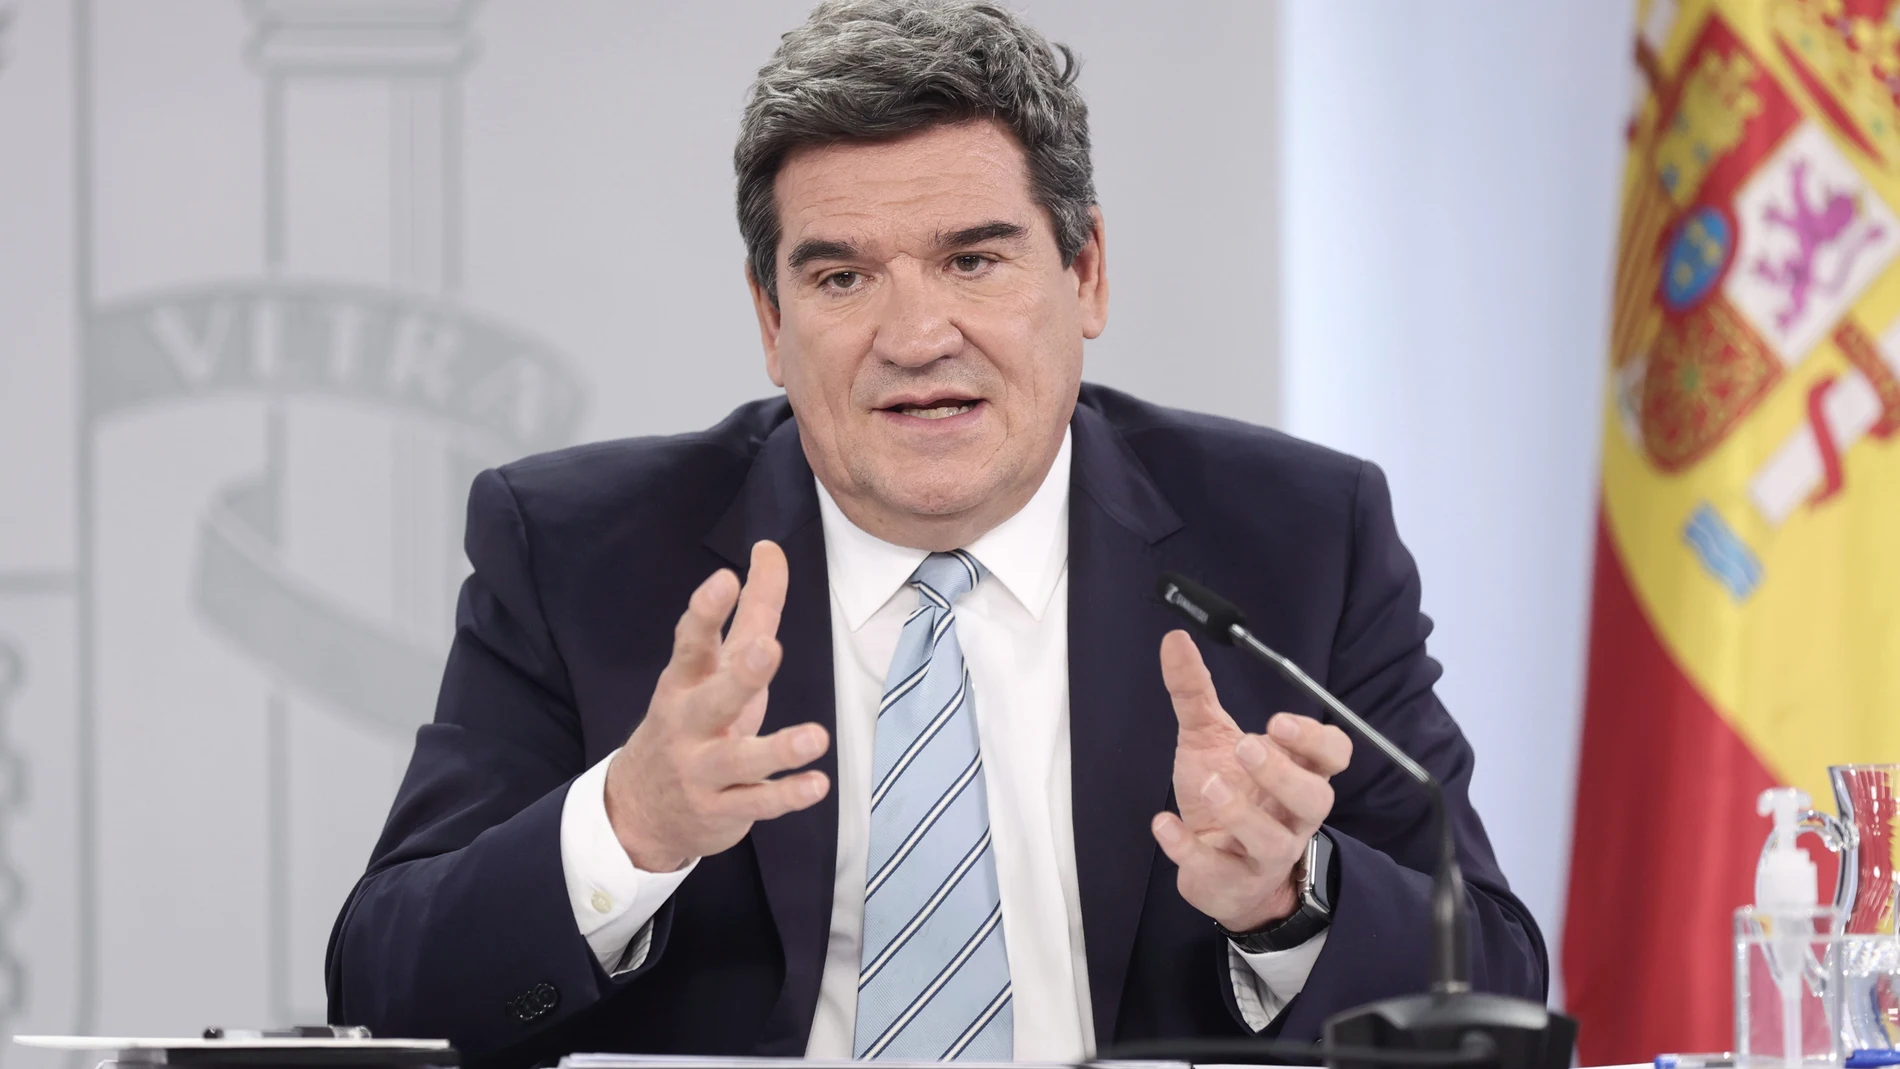 El ministro de Inclusión, Seguridad Social y Migraciones, José Luis Escrivá, en una rueda de prensa posterior al Consejo de Ministros